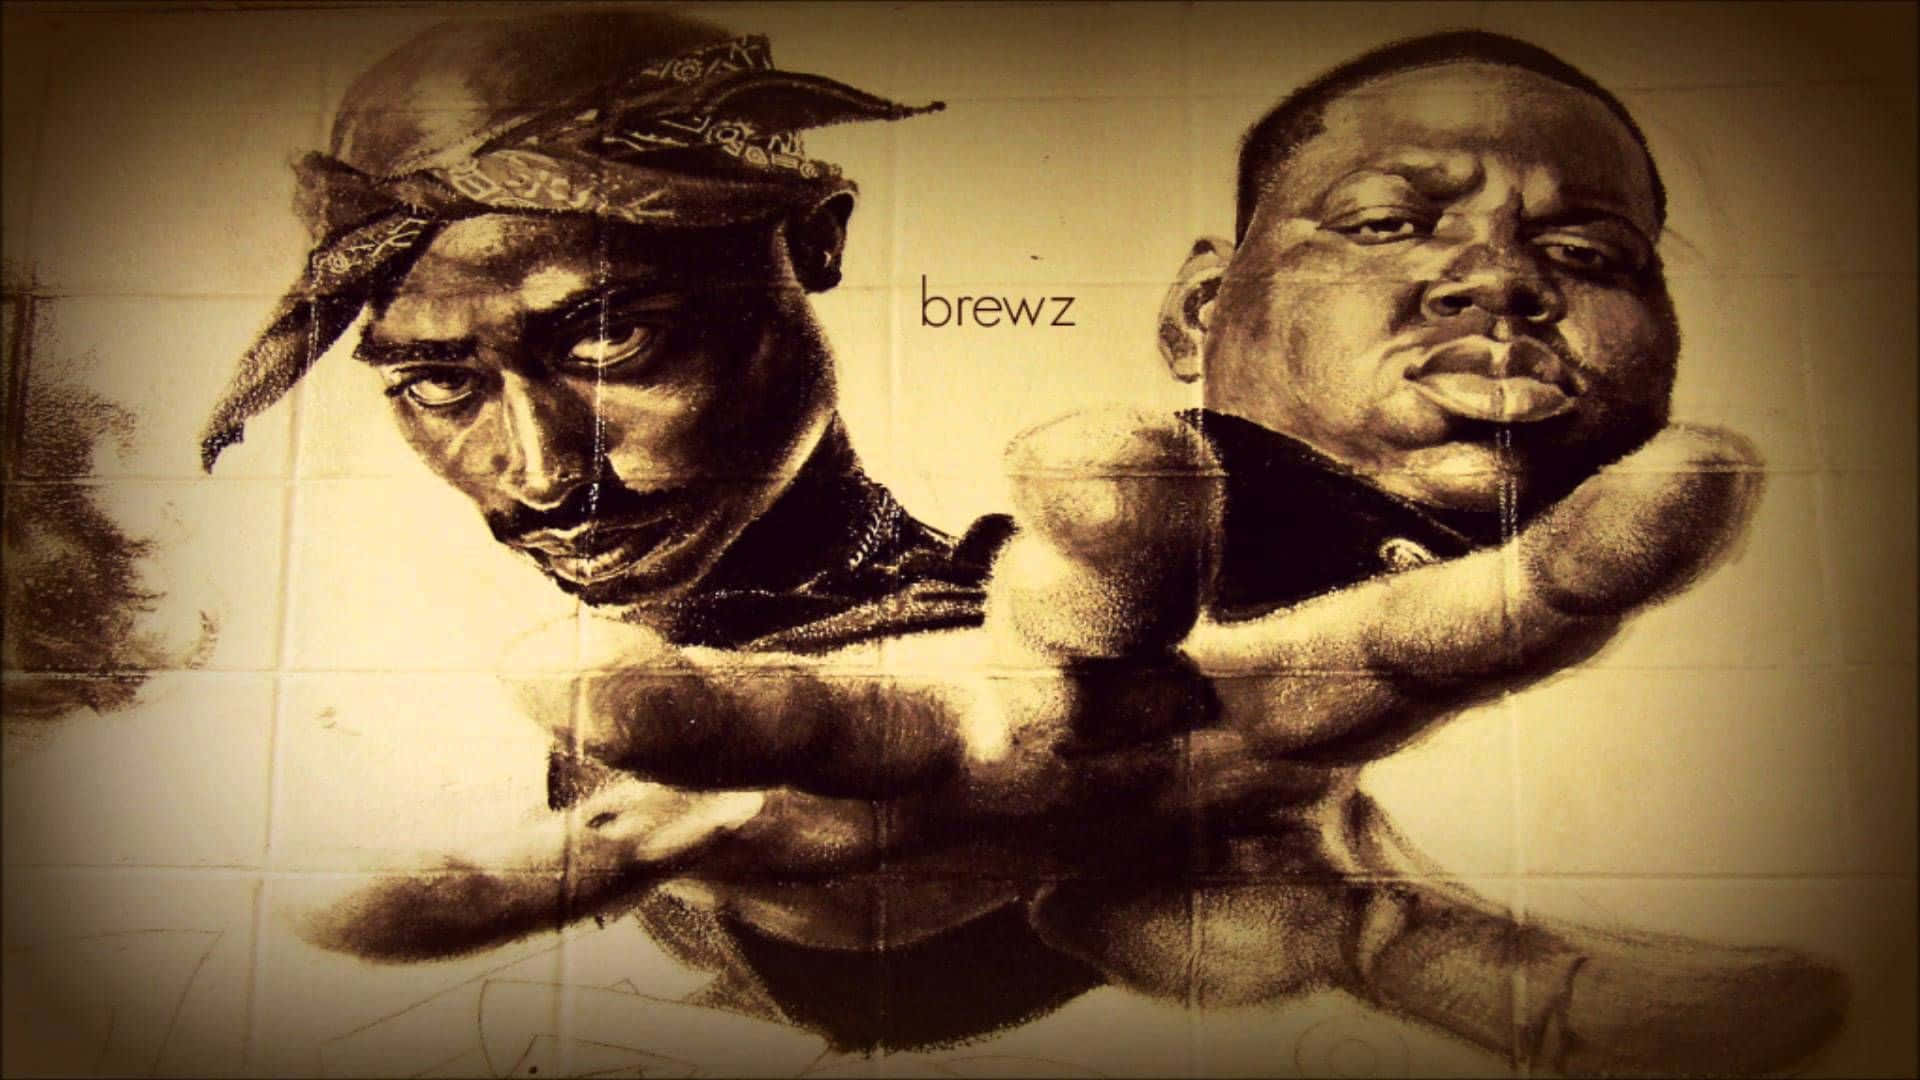 Unacaptura De Pantalla De Dos Estrellas Pioneras Del Hip-hop, Tupac Shakur (2pac) Y The Notorious B.i.g. Fondo de pantalla